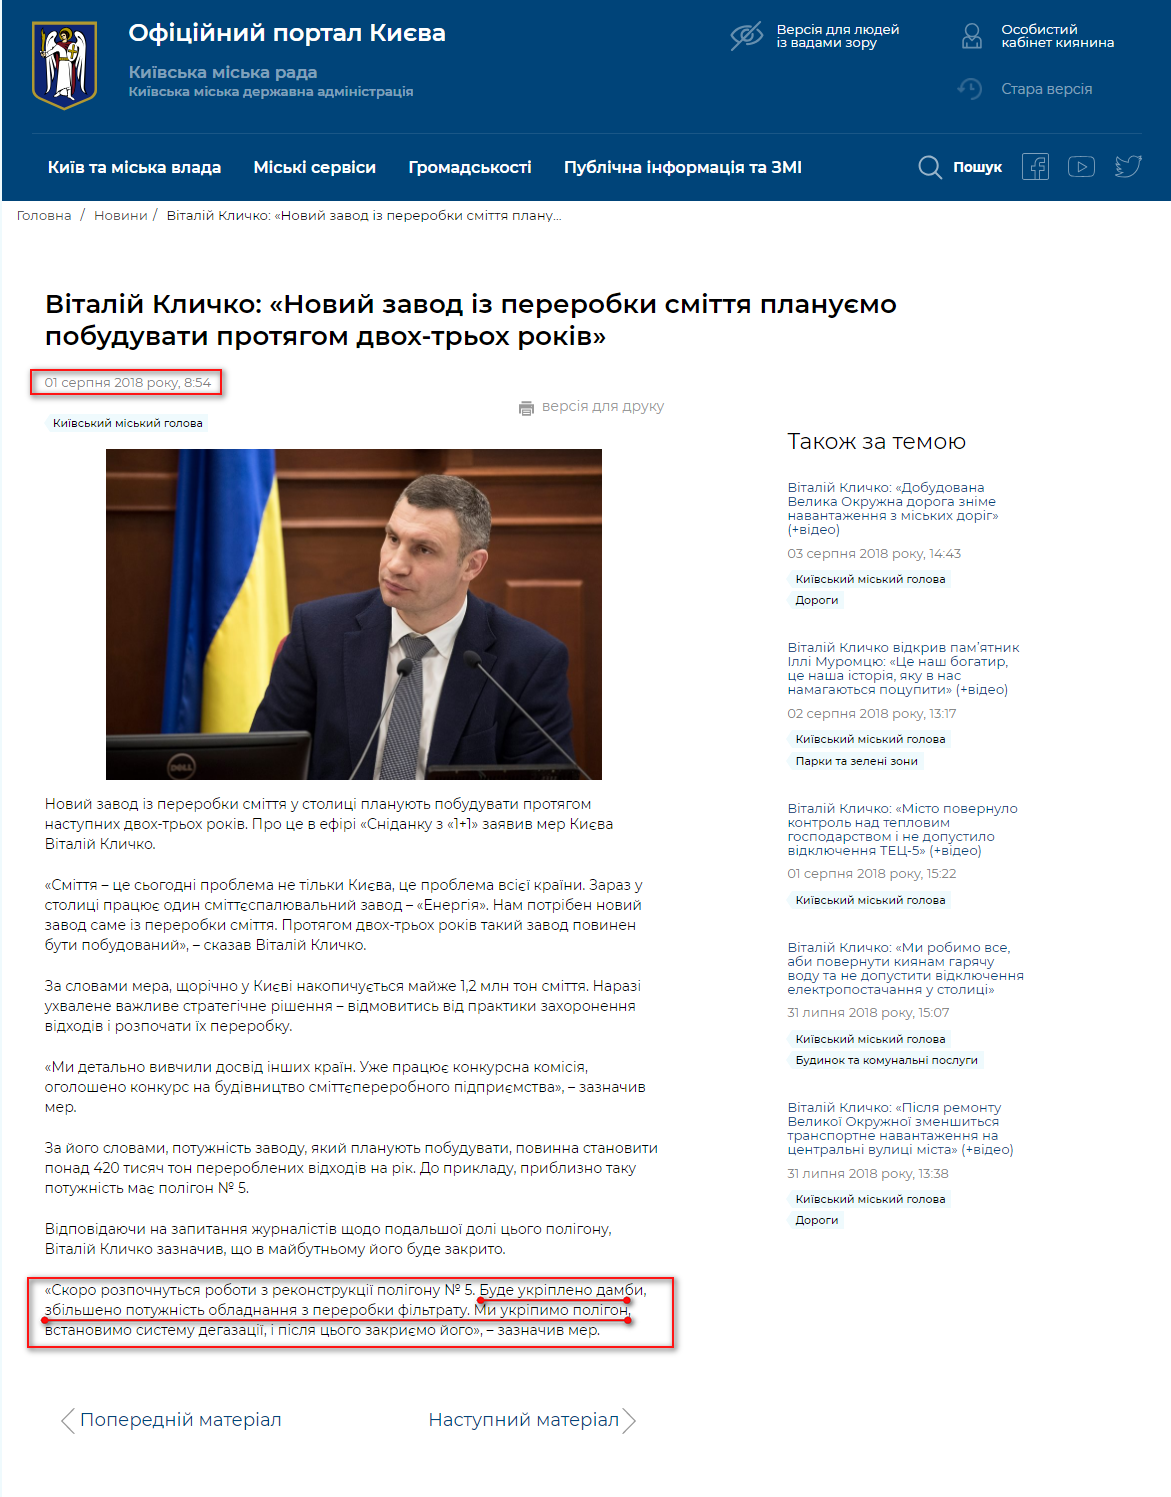 https://kyivcity.gov.ua/news/vitaliy_klichko_noviy_zavod_iz_pererobki_smittya_planuyemo_pobuduvati_protyagom_dvokh-trokh_rokiv.html